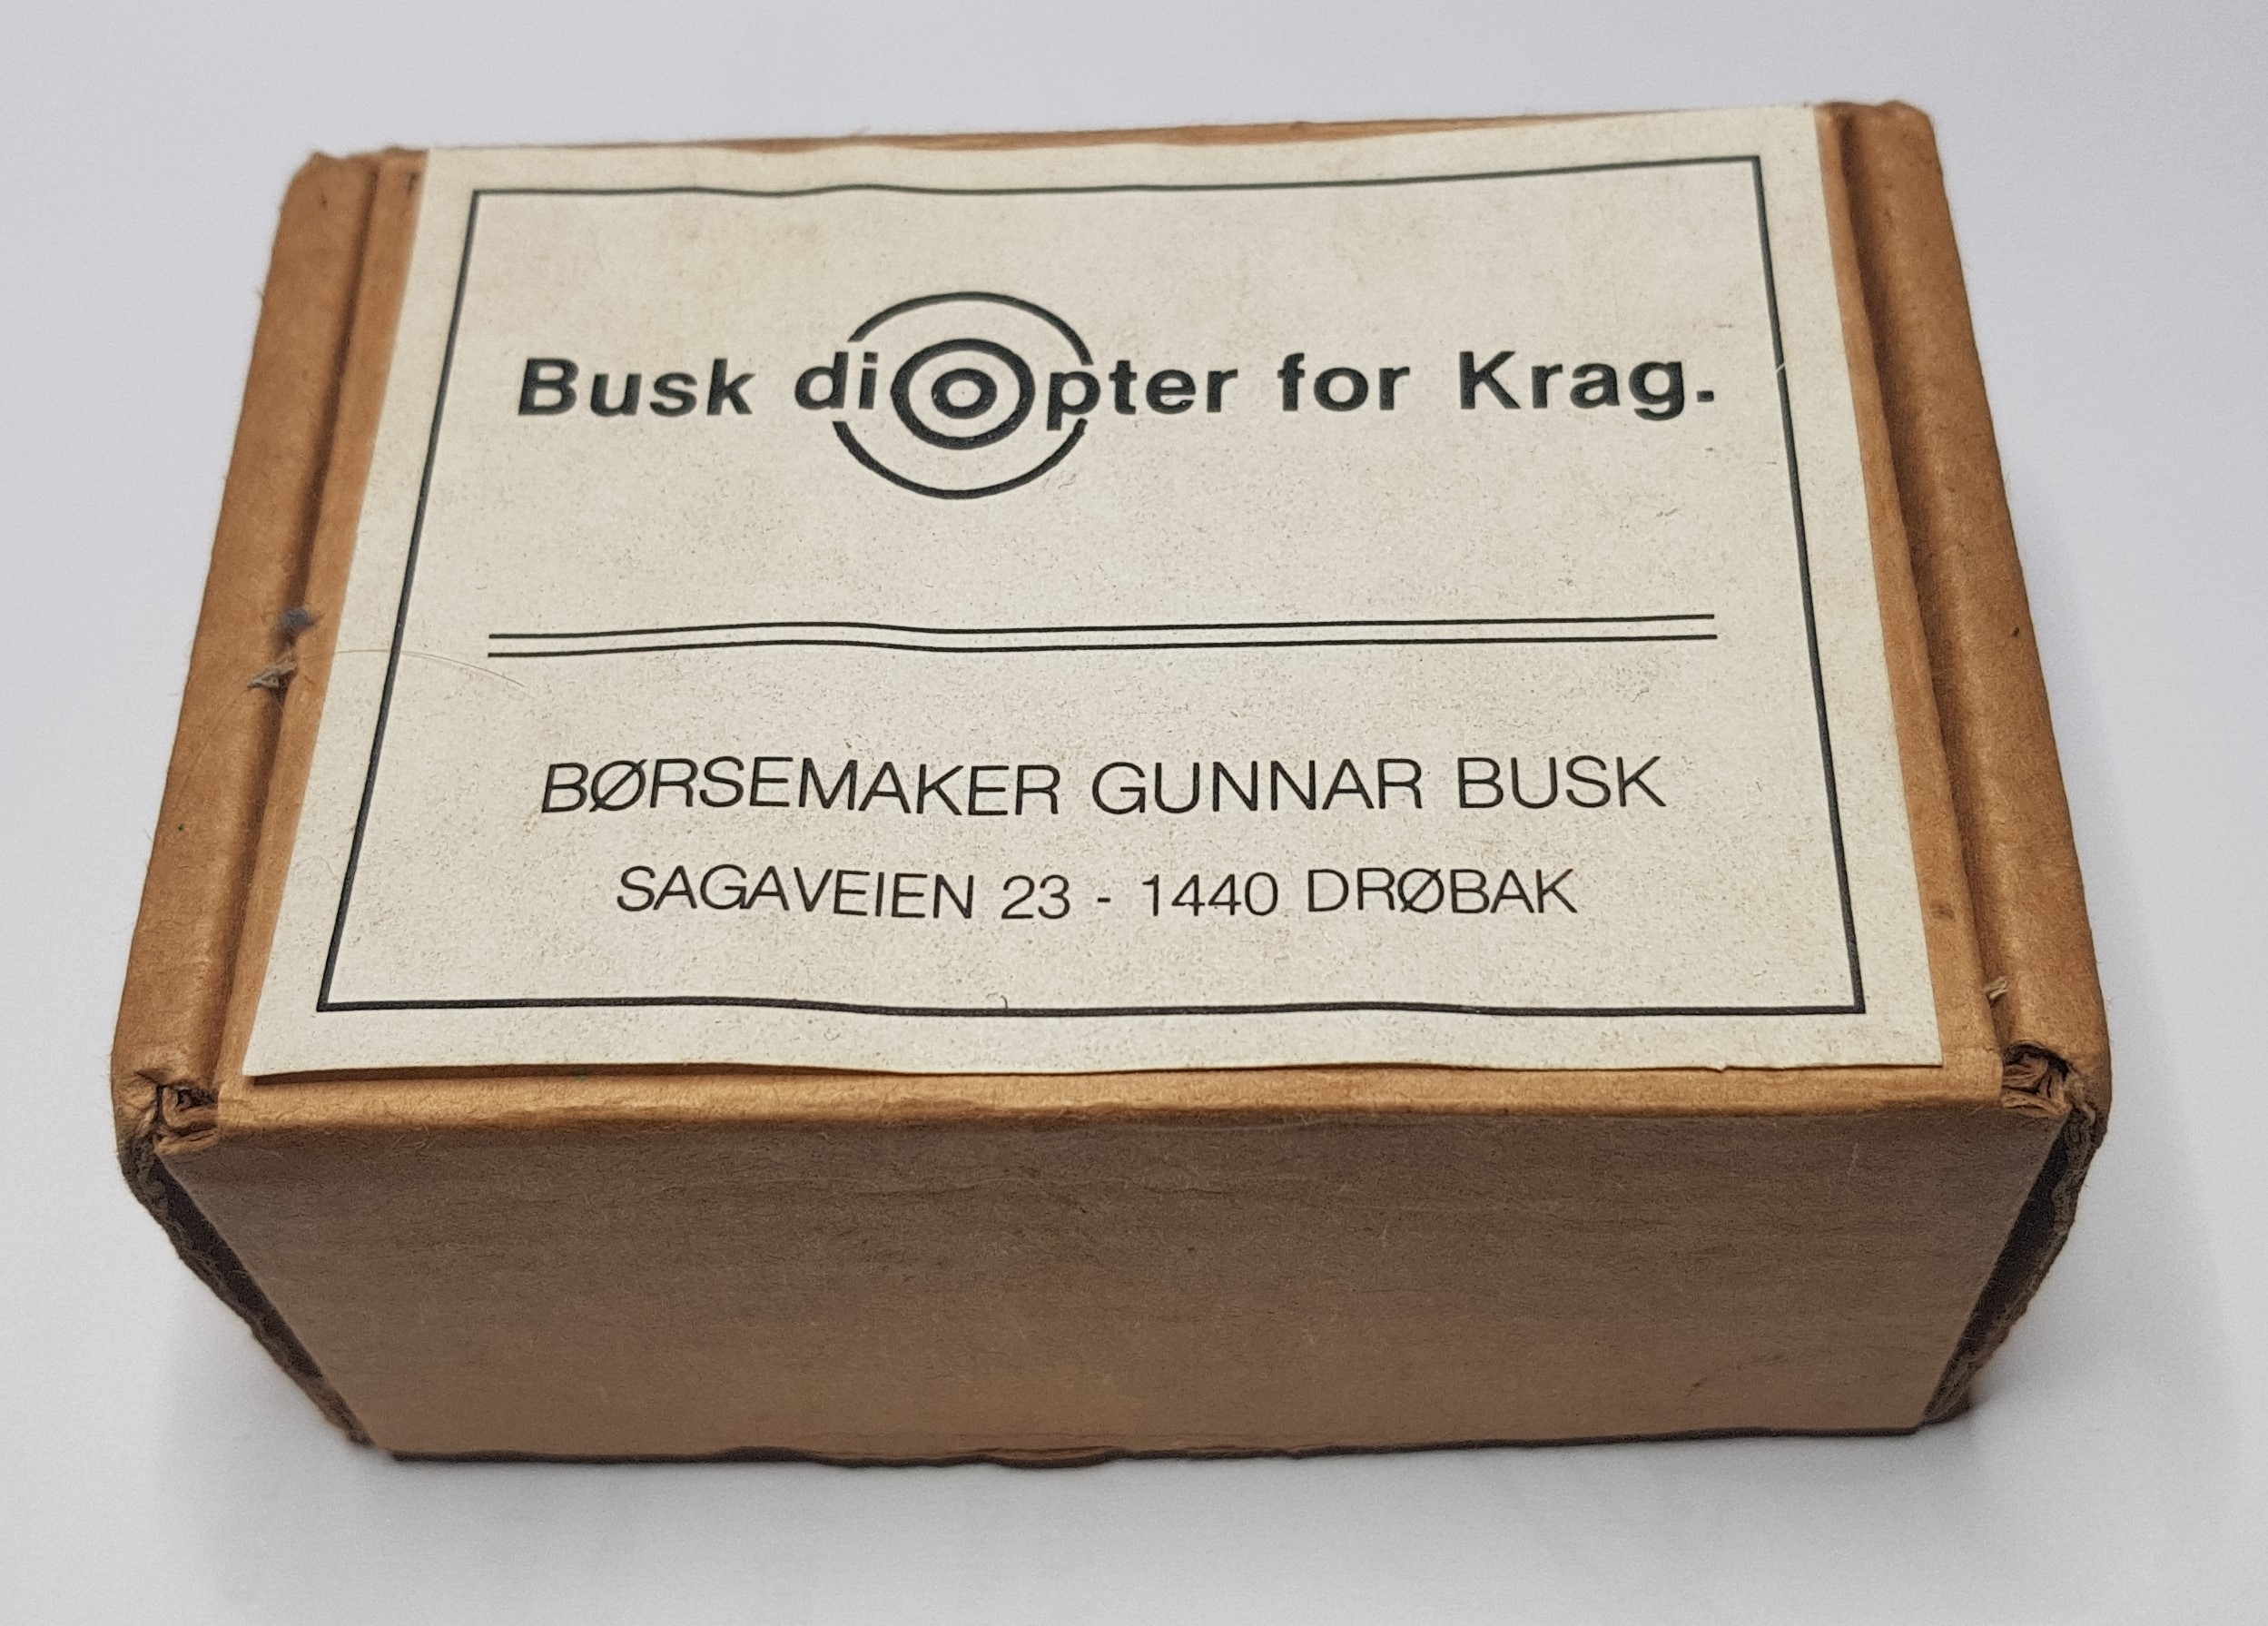 ./guns/utstyr/bilder/Utstyr-Diopter-Busk-Krag-5.JPG